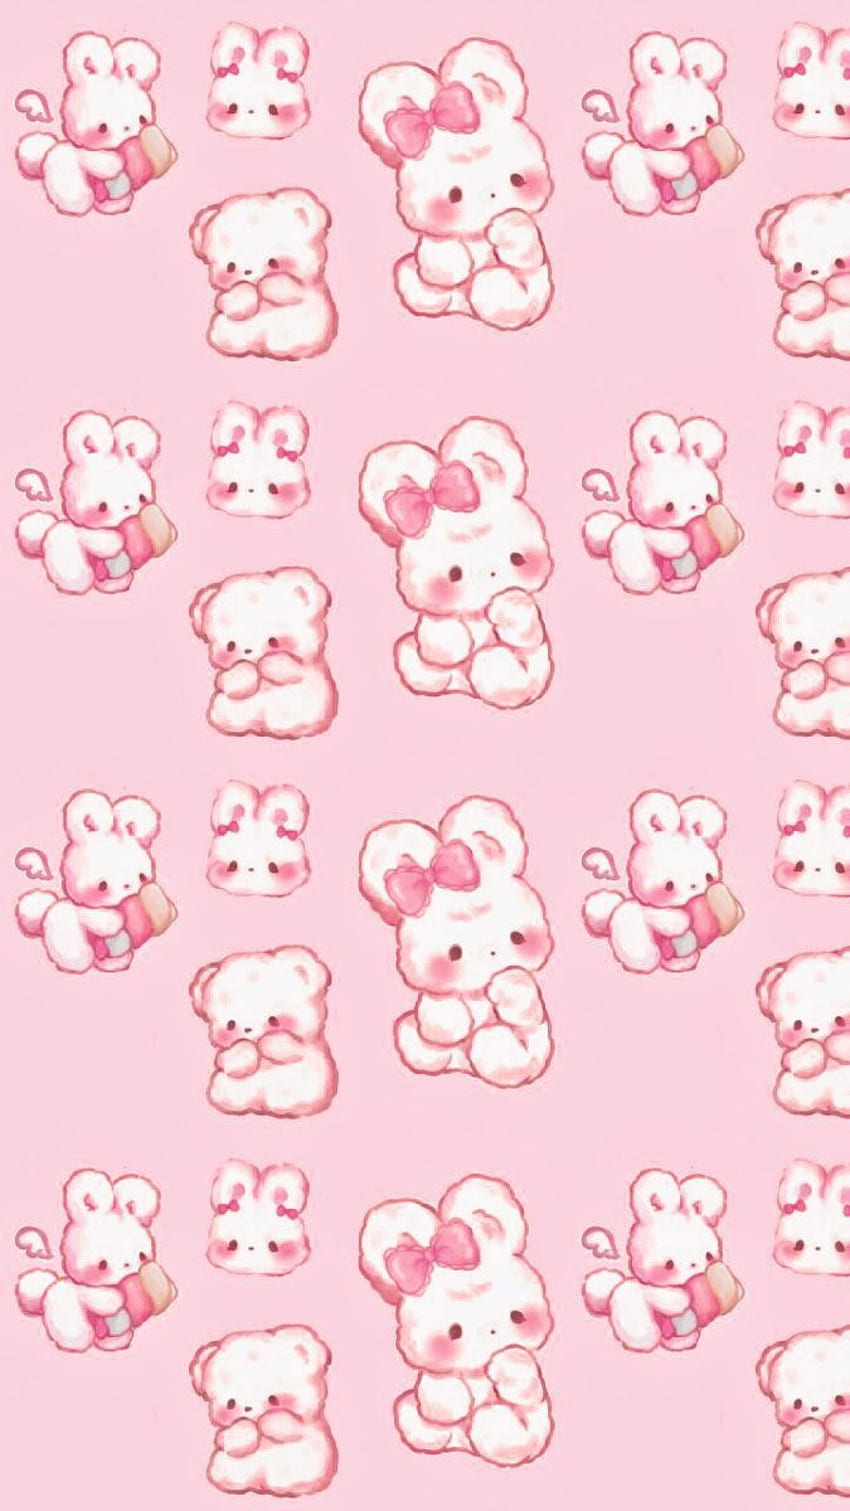 Bạn đang tìm kiếm những hình nền Sanrio dễ thương và nhẹ nhàng? Những hình nền Kawaii pastel hồng nhạt sẽ khiến bạn thích thú với sự dễ thương của họ. Hãy khám phá hình ảnh liên quan để tìm kiếm những hình nền dễ thương nhất!